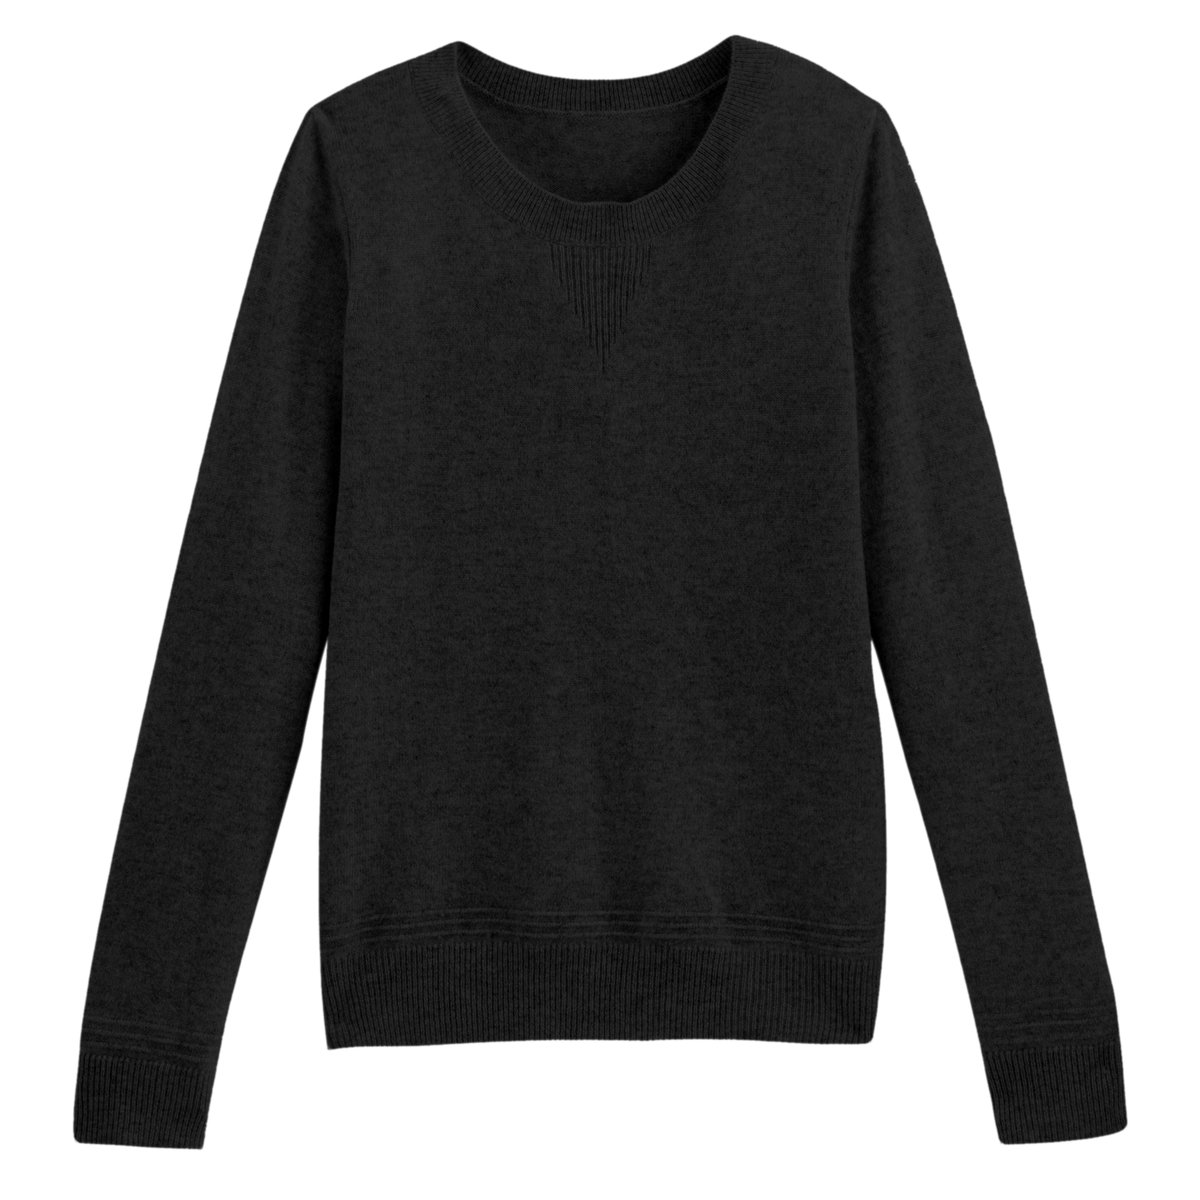 Пуловер La Redoute С круглым вырезом из кашемира XL черный, размер XL - фото 5